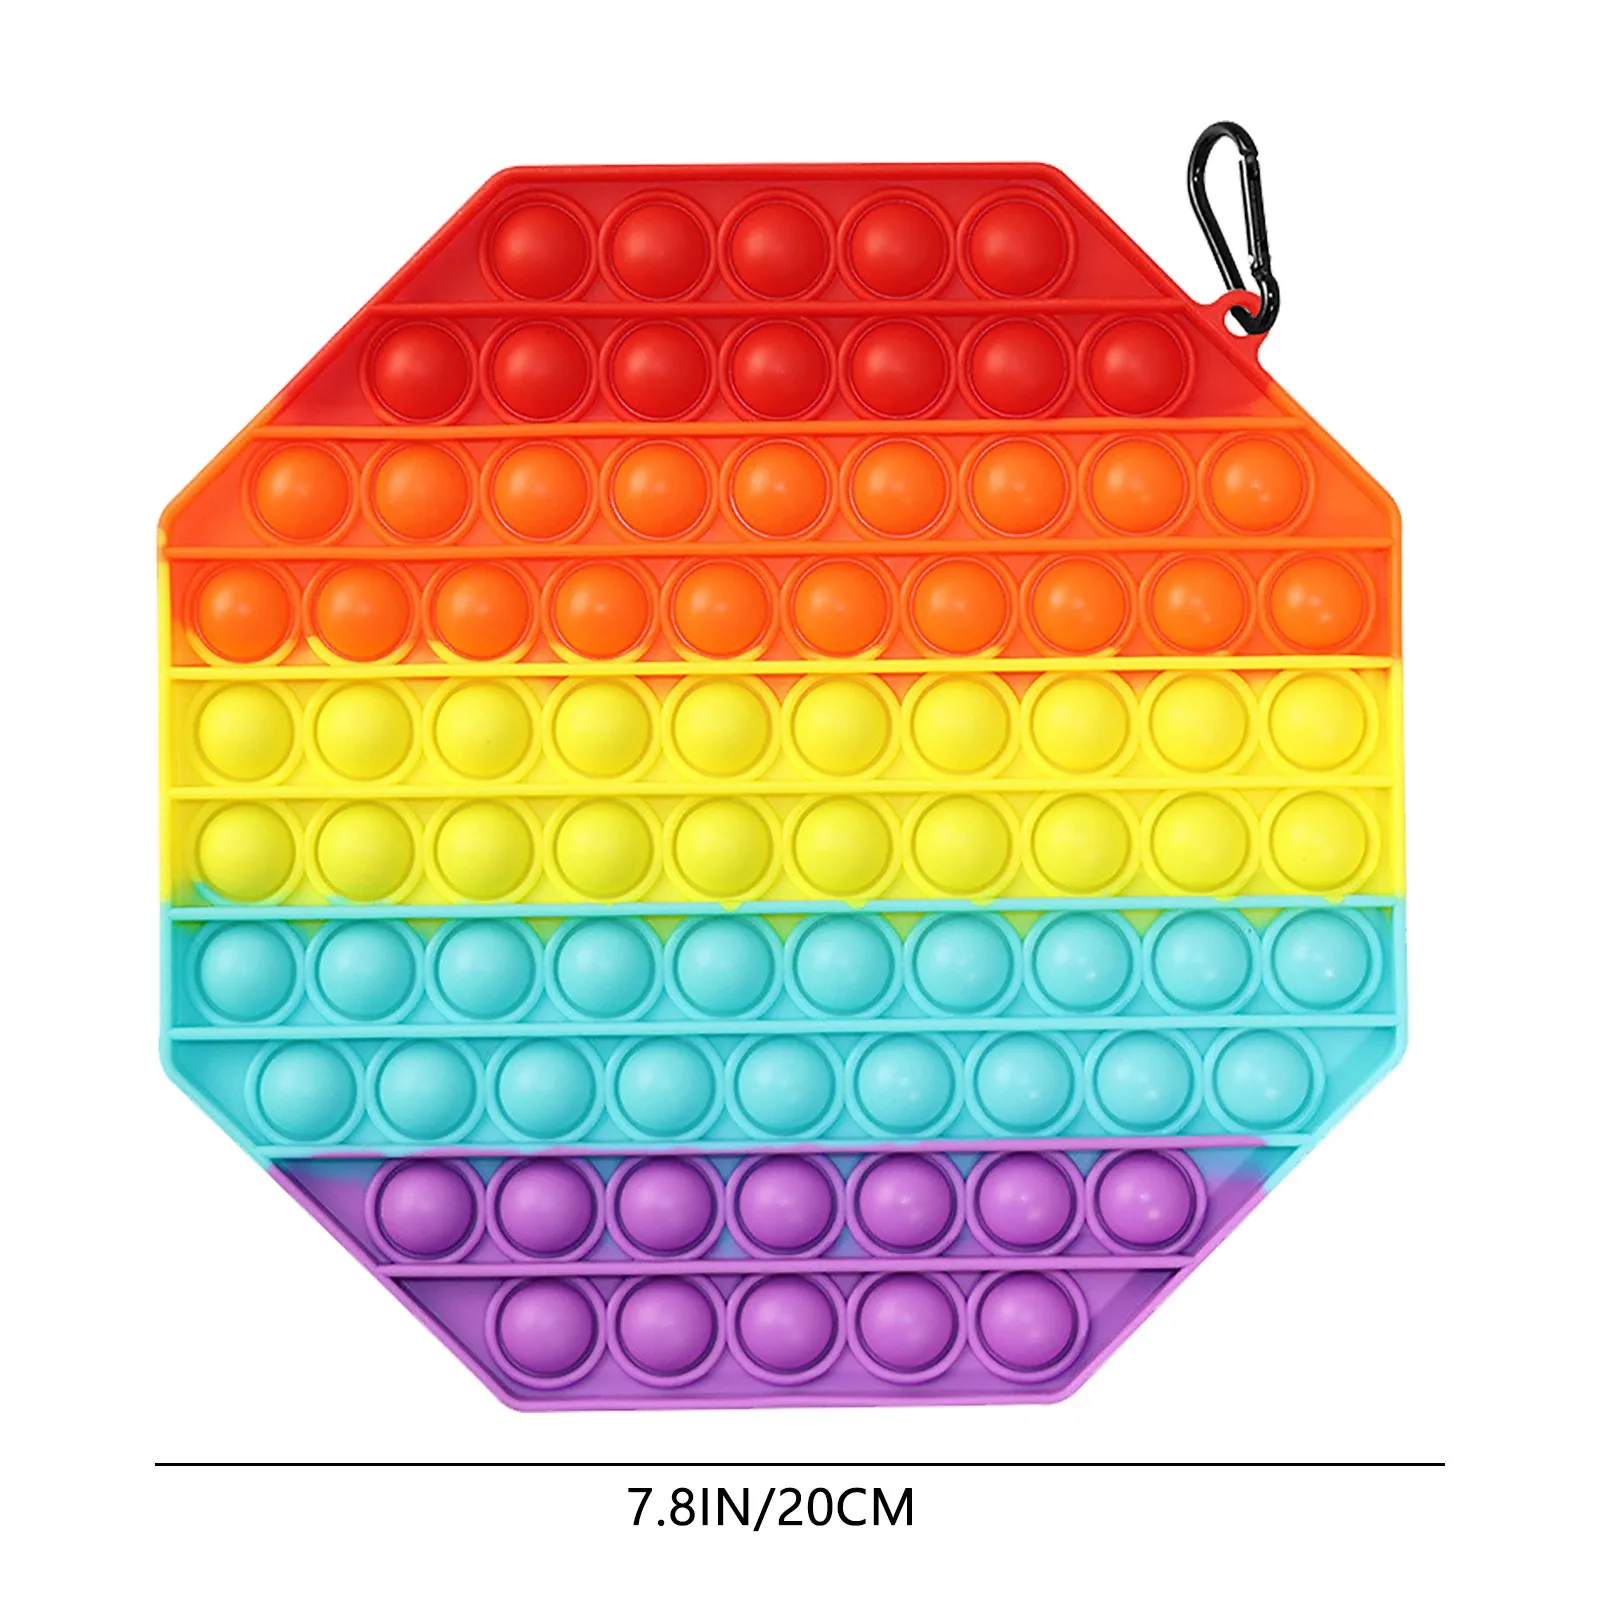 

NEW BIG SIZE 30cm Fidget Toys Square Antistress Toy Push Bubble Figet Sensory Squishy Jouet Pour Autiste For Adult Kids Gift